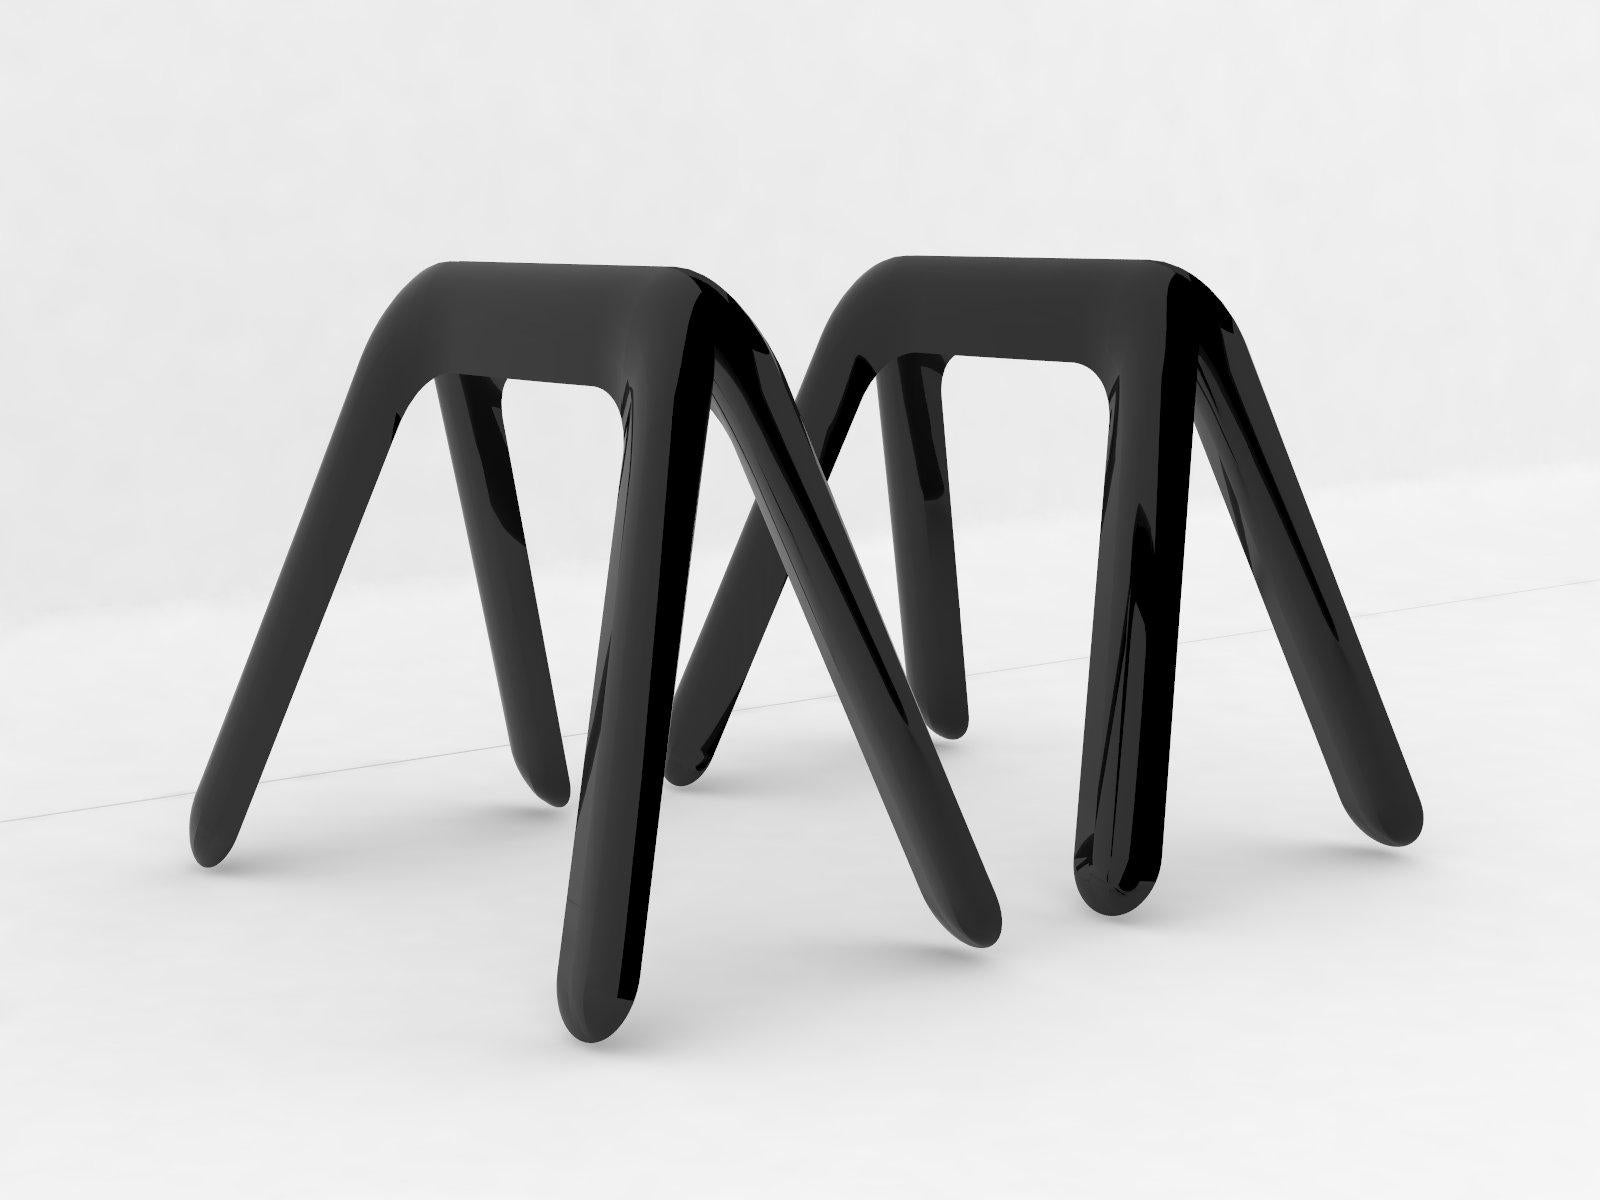 Paar Kozka-Böcke in schwarz glänzend von Zieta
Abmessungen: T 31 x B 51 x H 45 cm 
MATERIAL: Kohlenstoffstahl.
Erhältlich in anderen Farben und in rostfreiem Stahl.

Kozka ist unser neues Mitglied der Tischstrukturen. Es ist eine